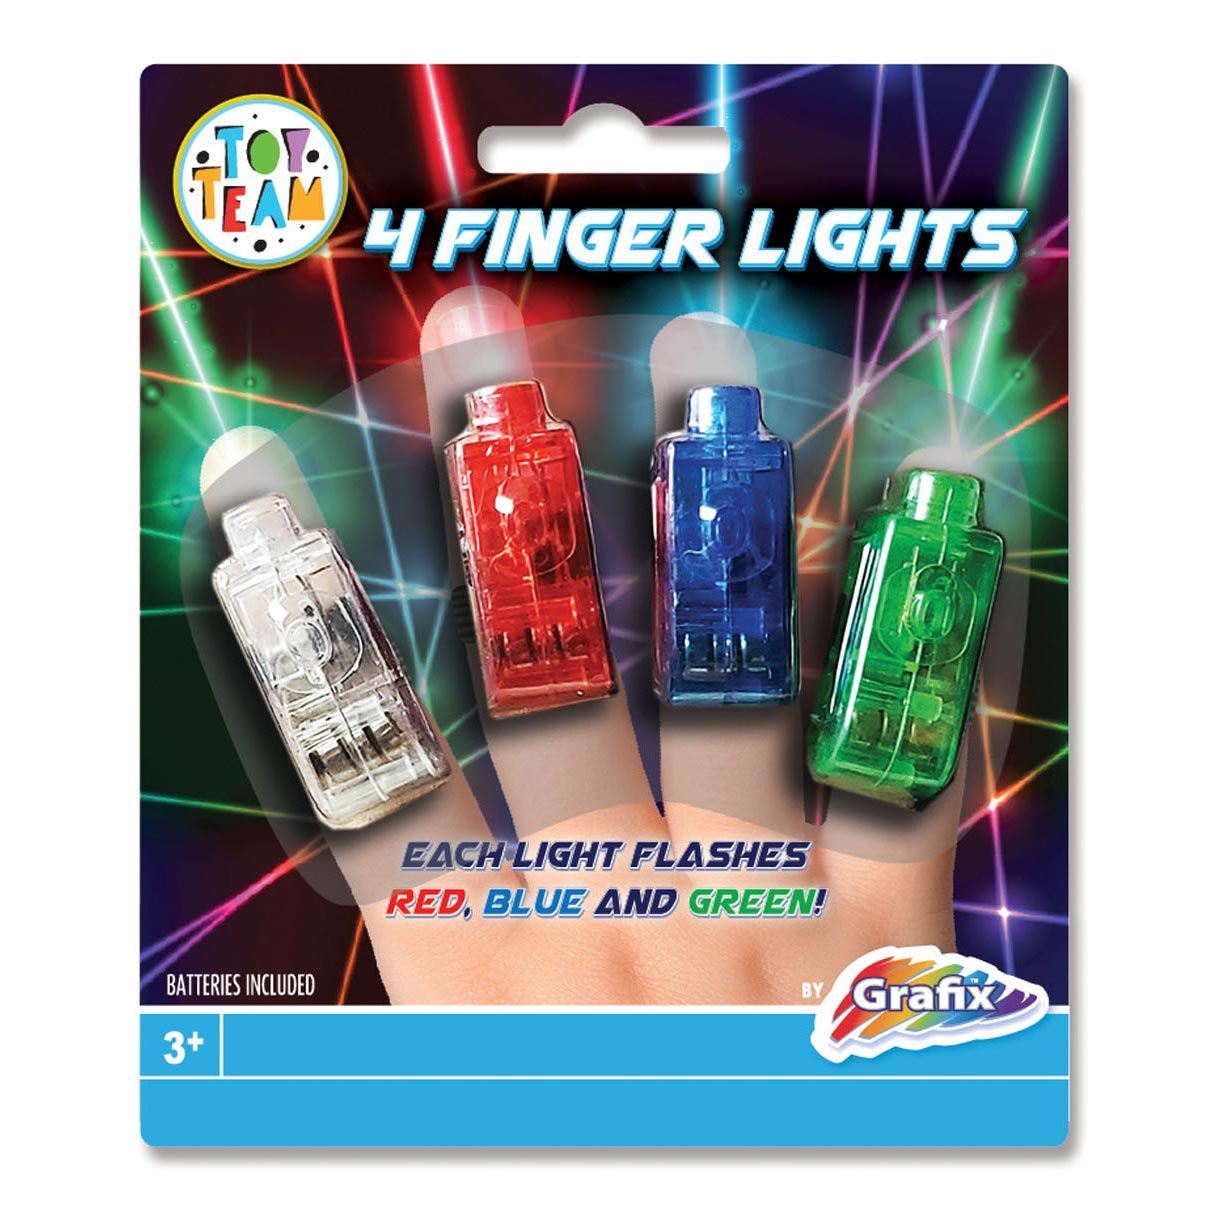 Grafix - Finger Lights, 4pcs. 710001